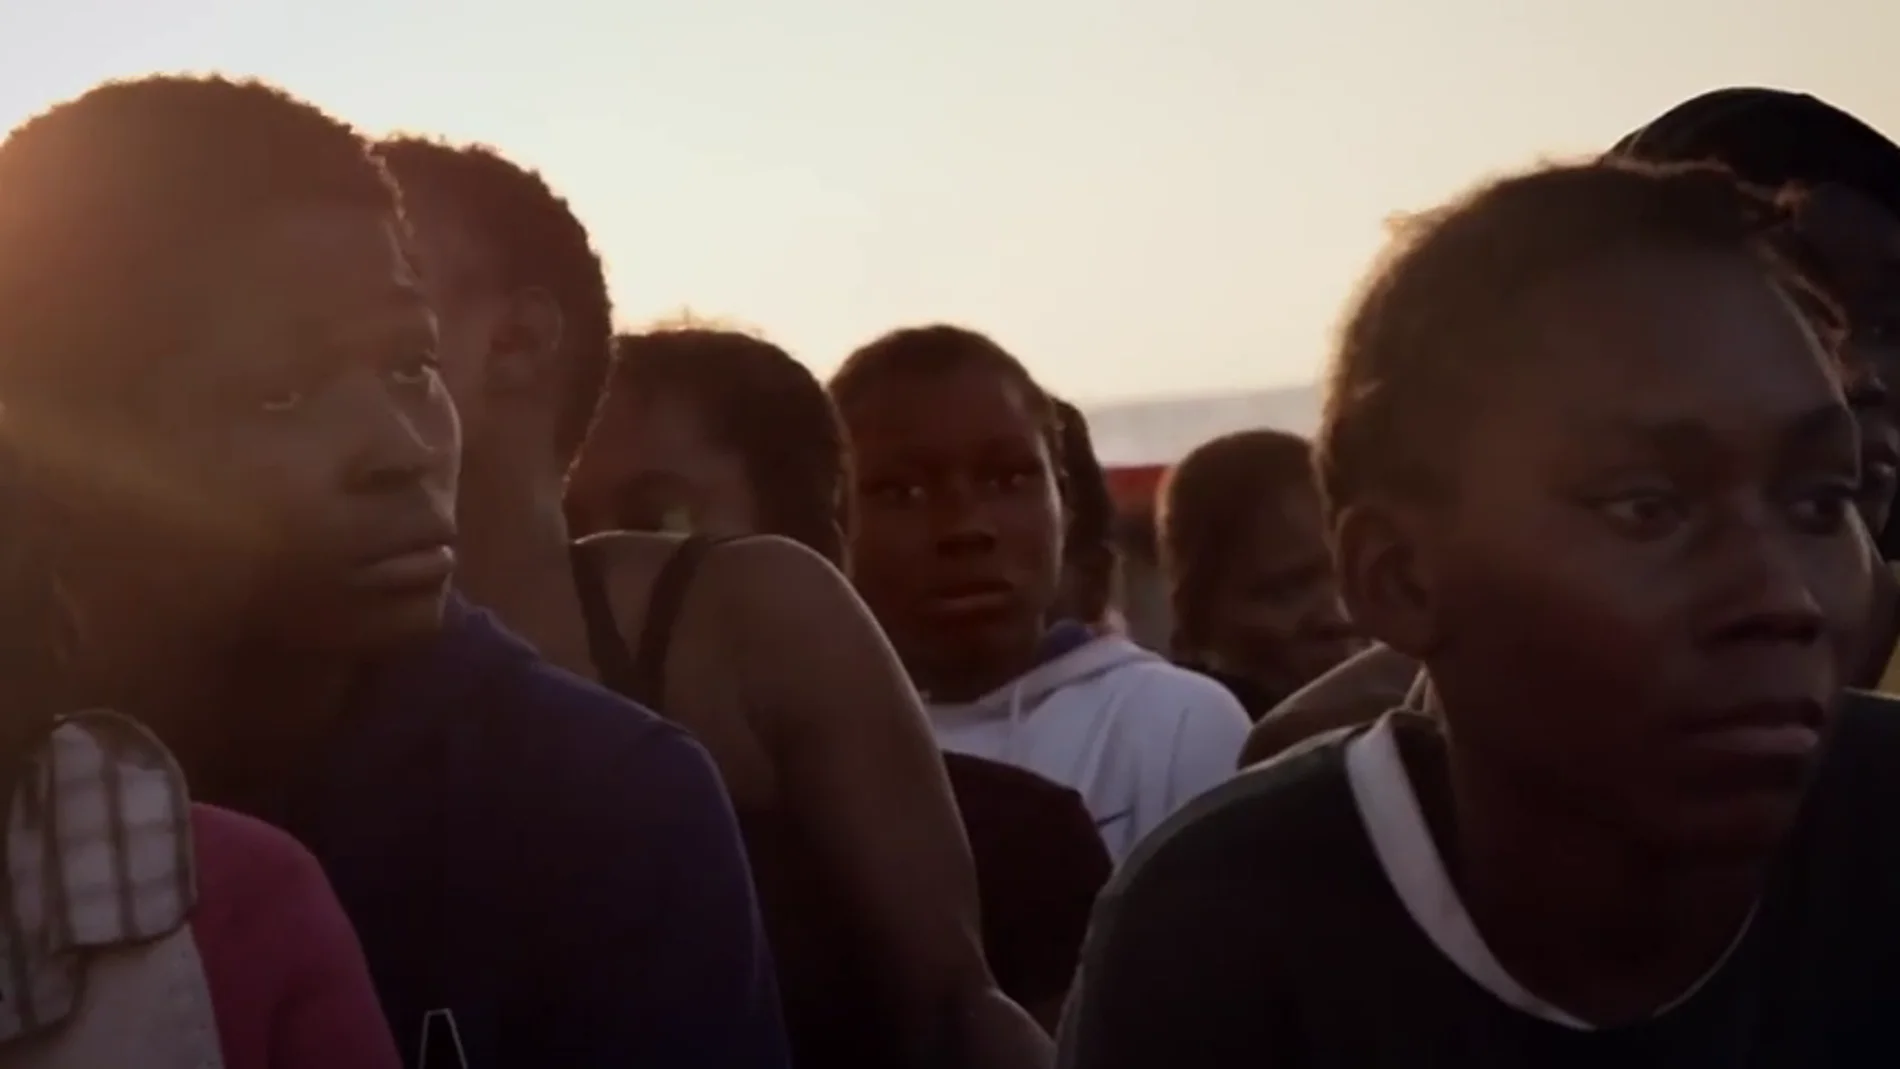 Frame 43.514059 de: Coldplay le pone música al drama de los refugiados en el Mediterráneo: "Nadie merece morir en el mar"